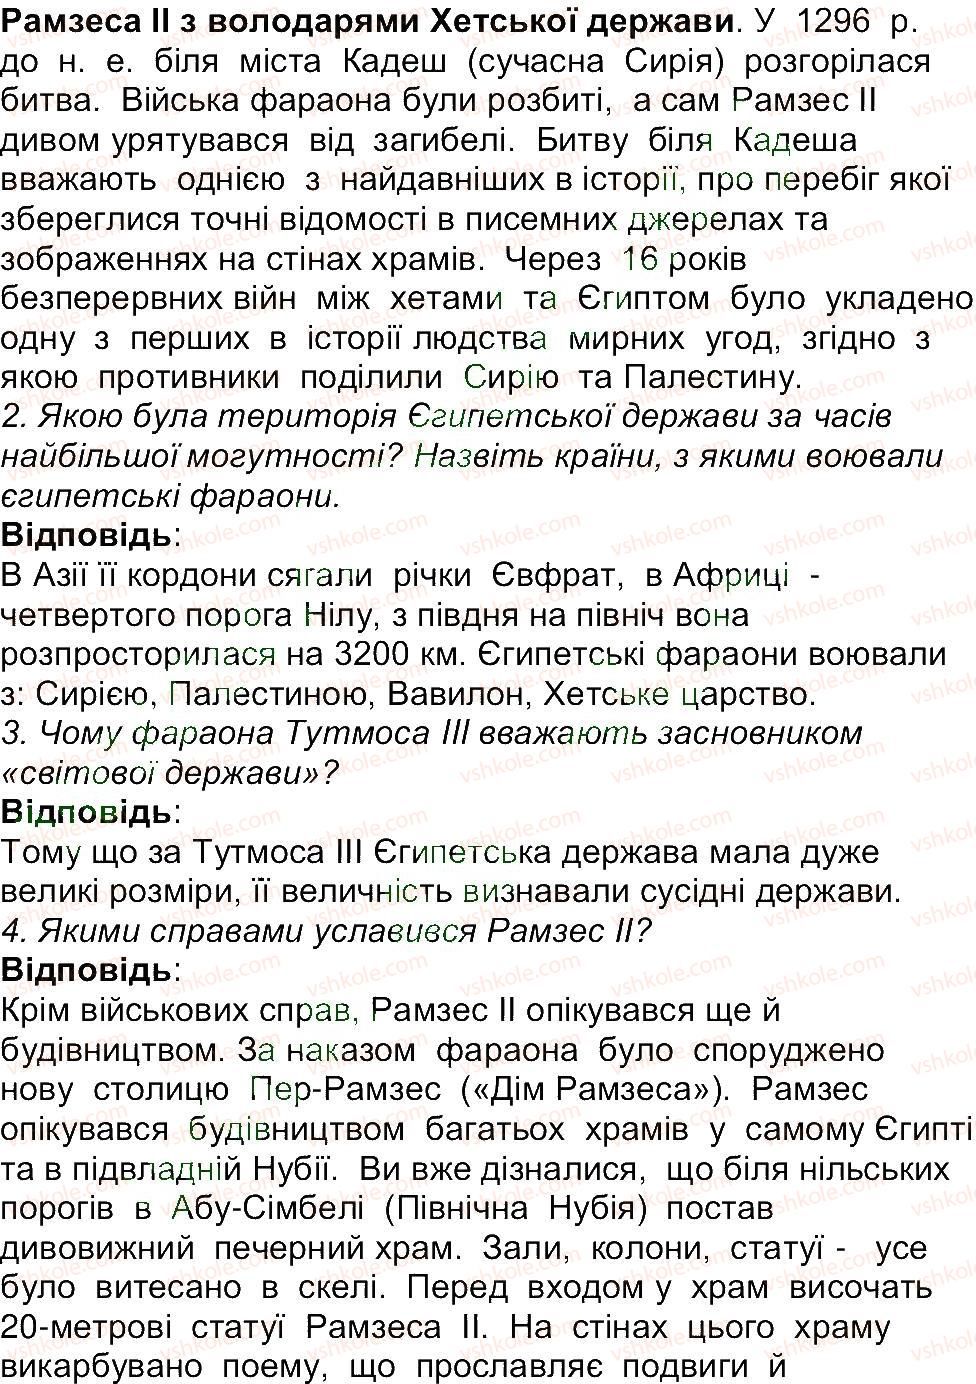 6-istoriya-og-bandrovskij-vs-vlasov-2014--storinki-9-70-67-rnd1539.jpg